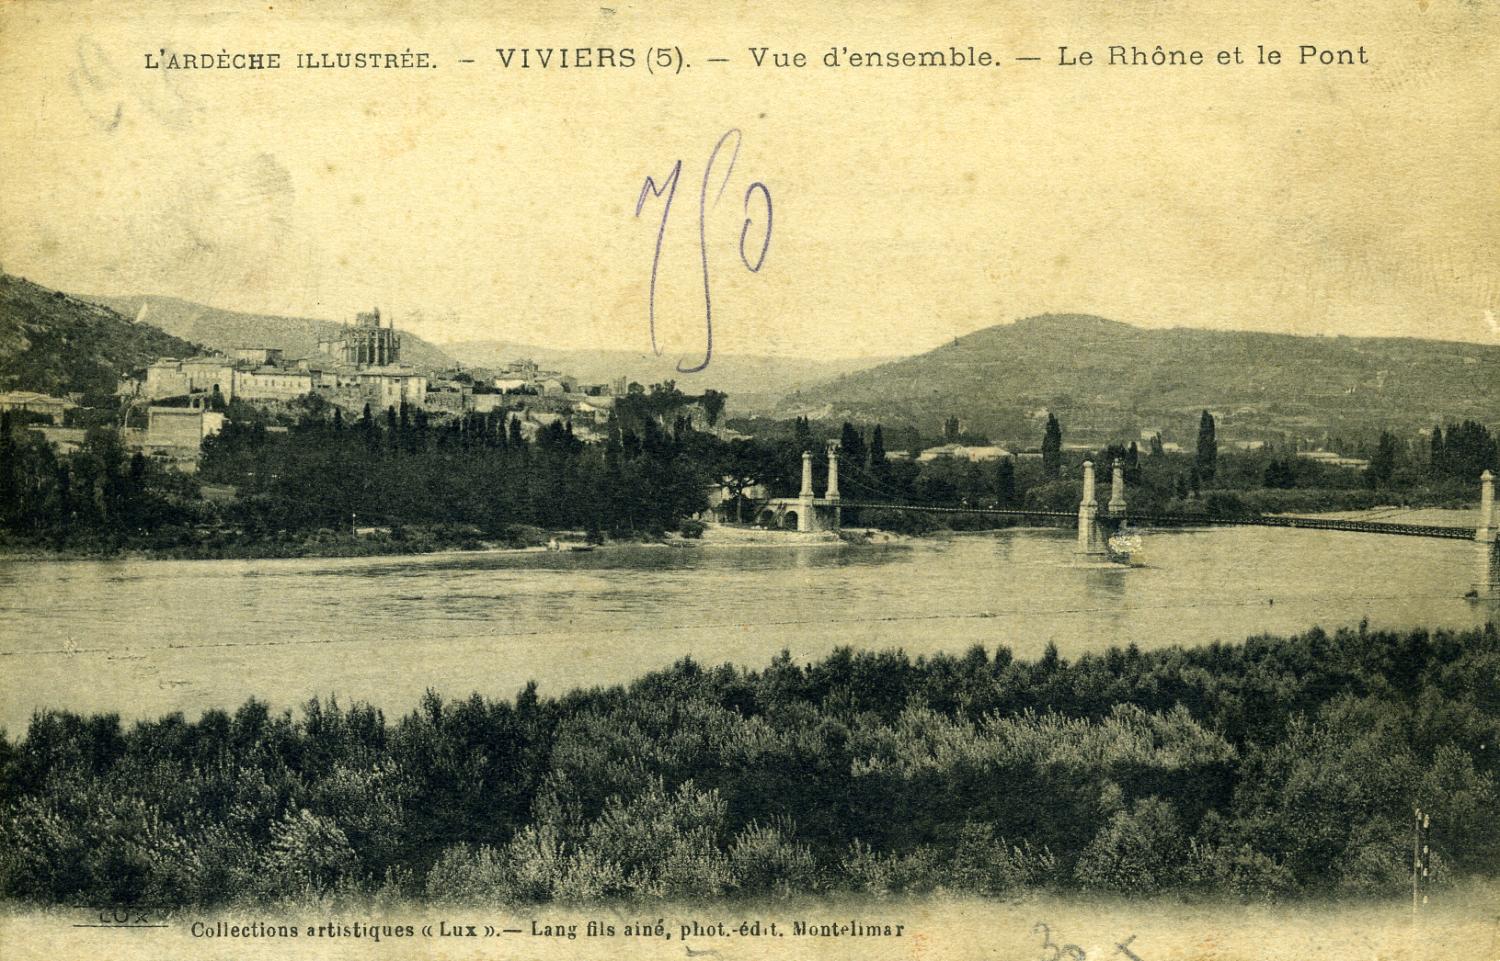 L'Ardèche illustrée - Viviers